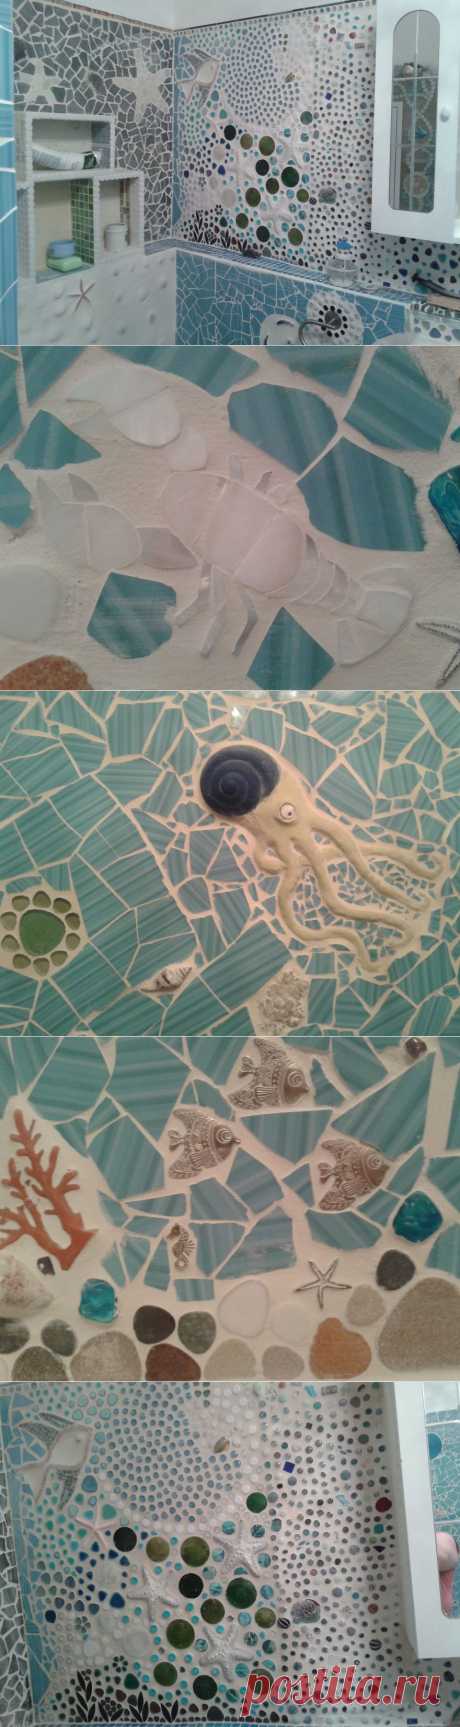 Подводный мир в обычной ванной: морские чудища из кафеля — на стенах | ПолонСил.ру - социальная сеть здоровья